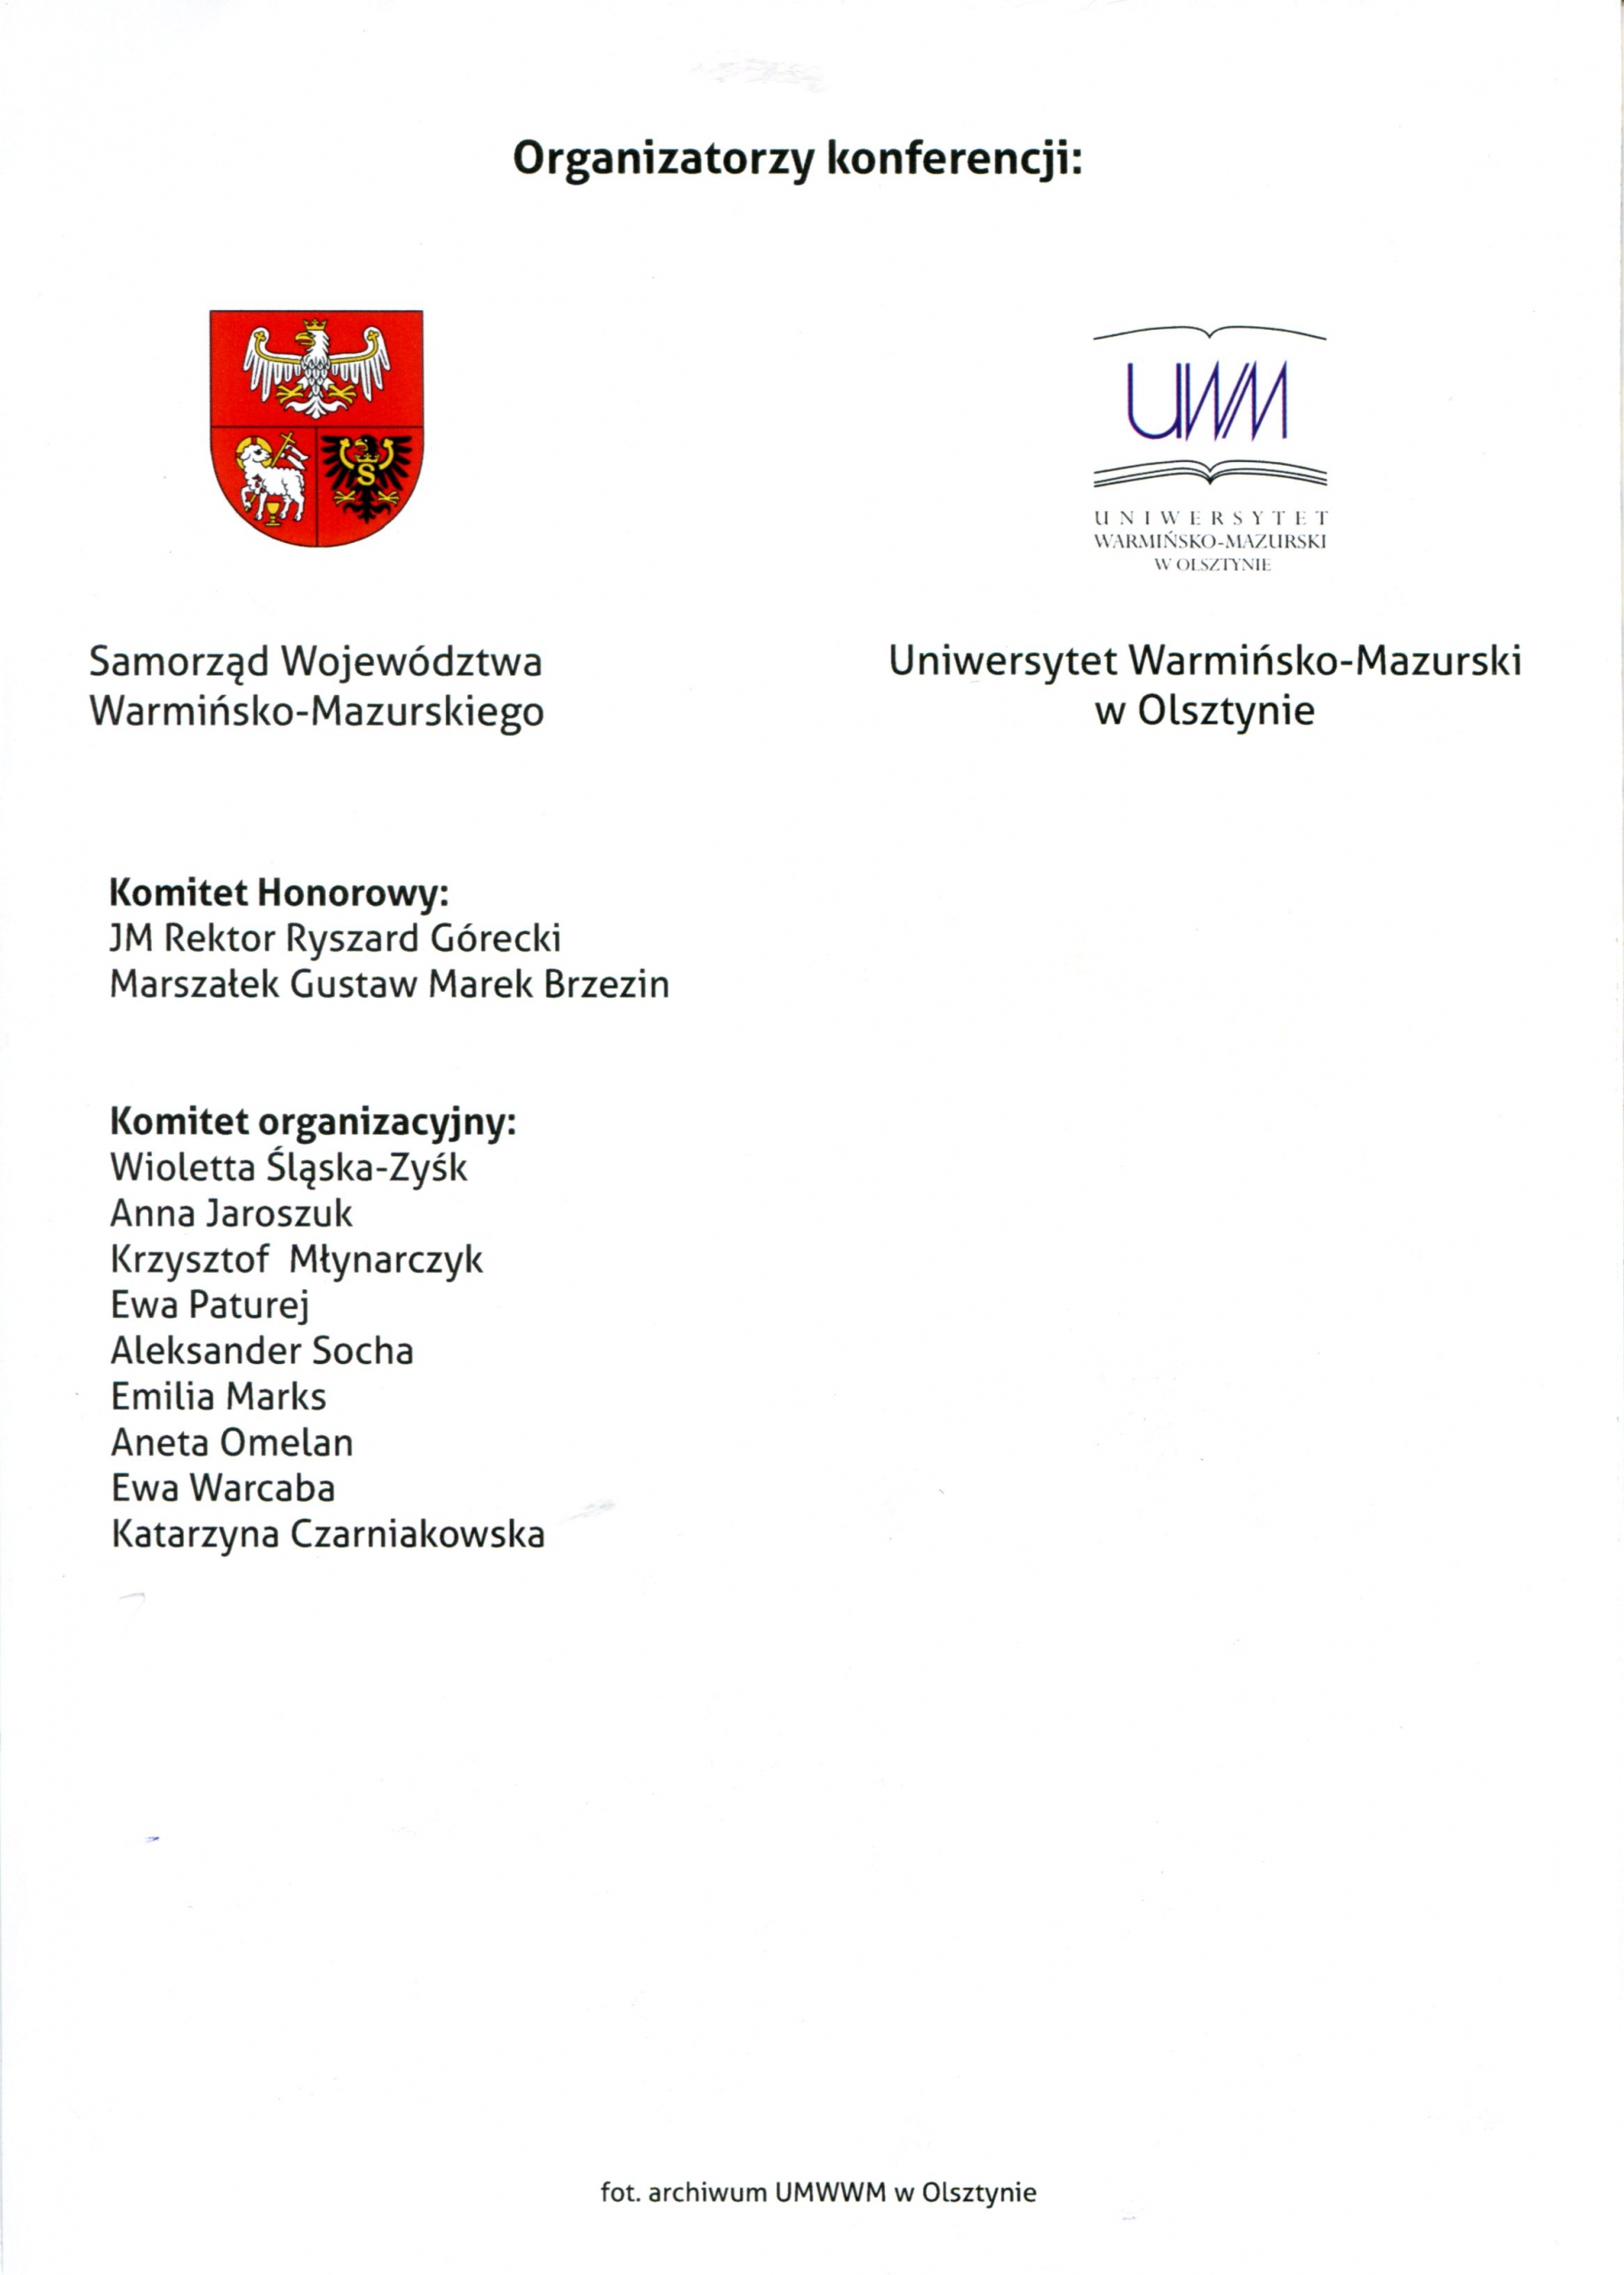 Organizatorzy: UWM w Olsztynie oraz Samorząd Województwa Warmińsko-Mazurskiego